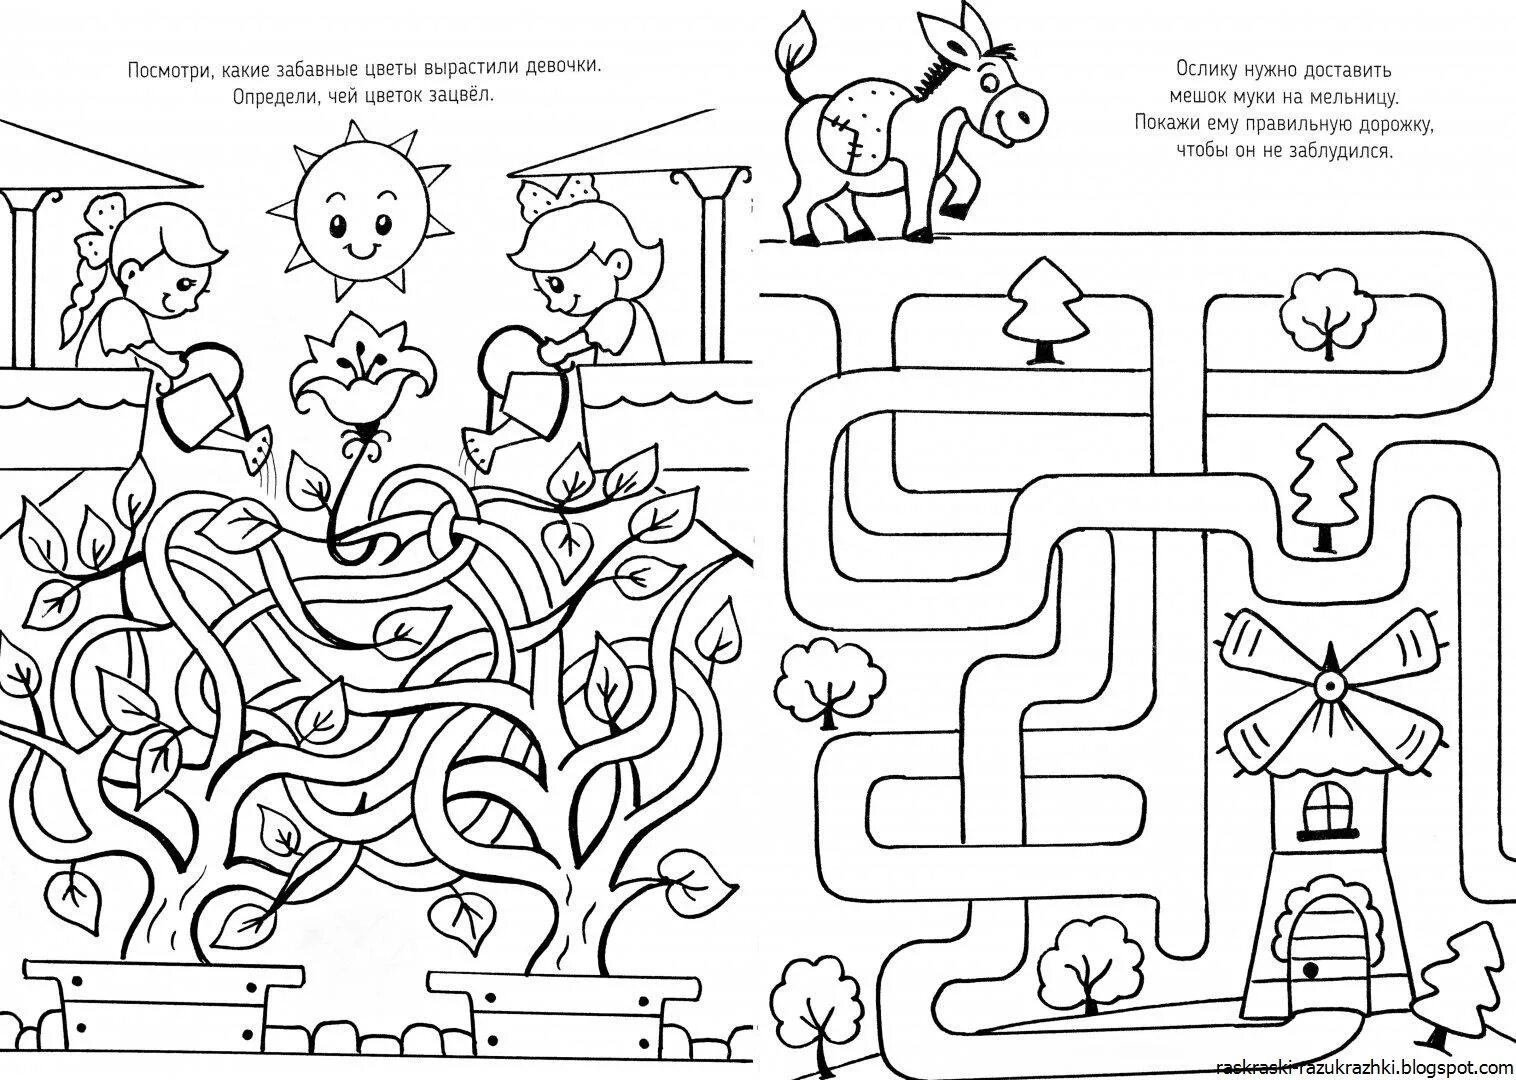 Раскраски В игры для детей 5 лет пазлы и (38 шт.) - скачать или распечатать бесплатно #